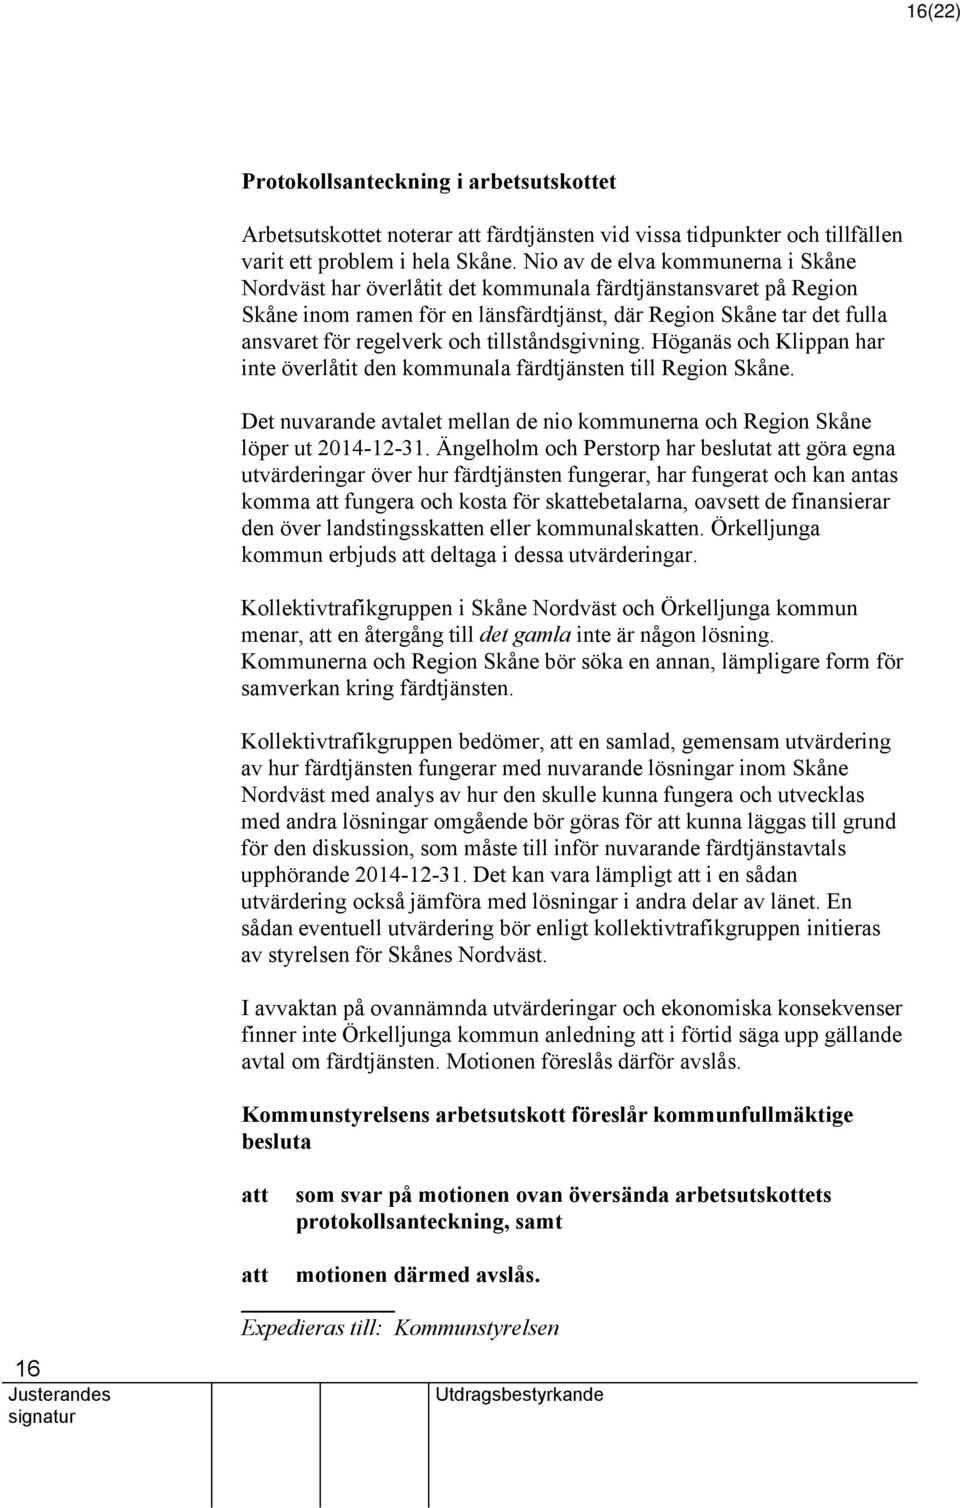 tillståndsgivning. Höganäs och Klippan har inte överlåtit den kommunala färdtjänsten till Region Skåne. Det nuvarande avtalet mellan de nio kommunerna och Region Skåne löper ut 2014-12-31.